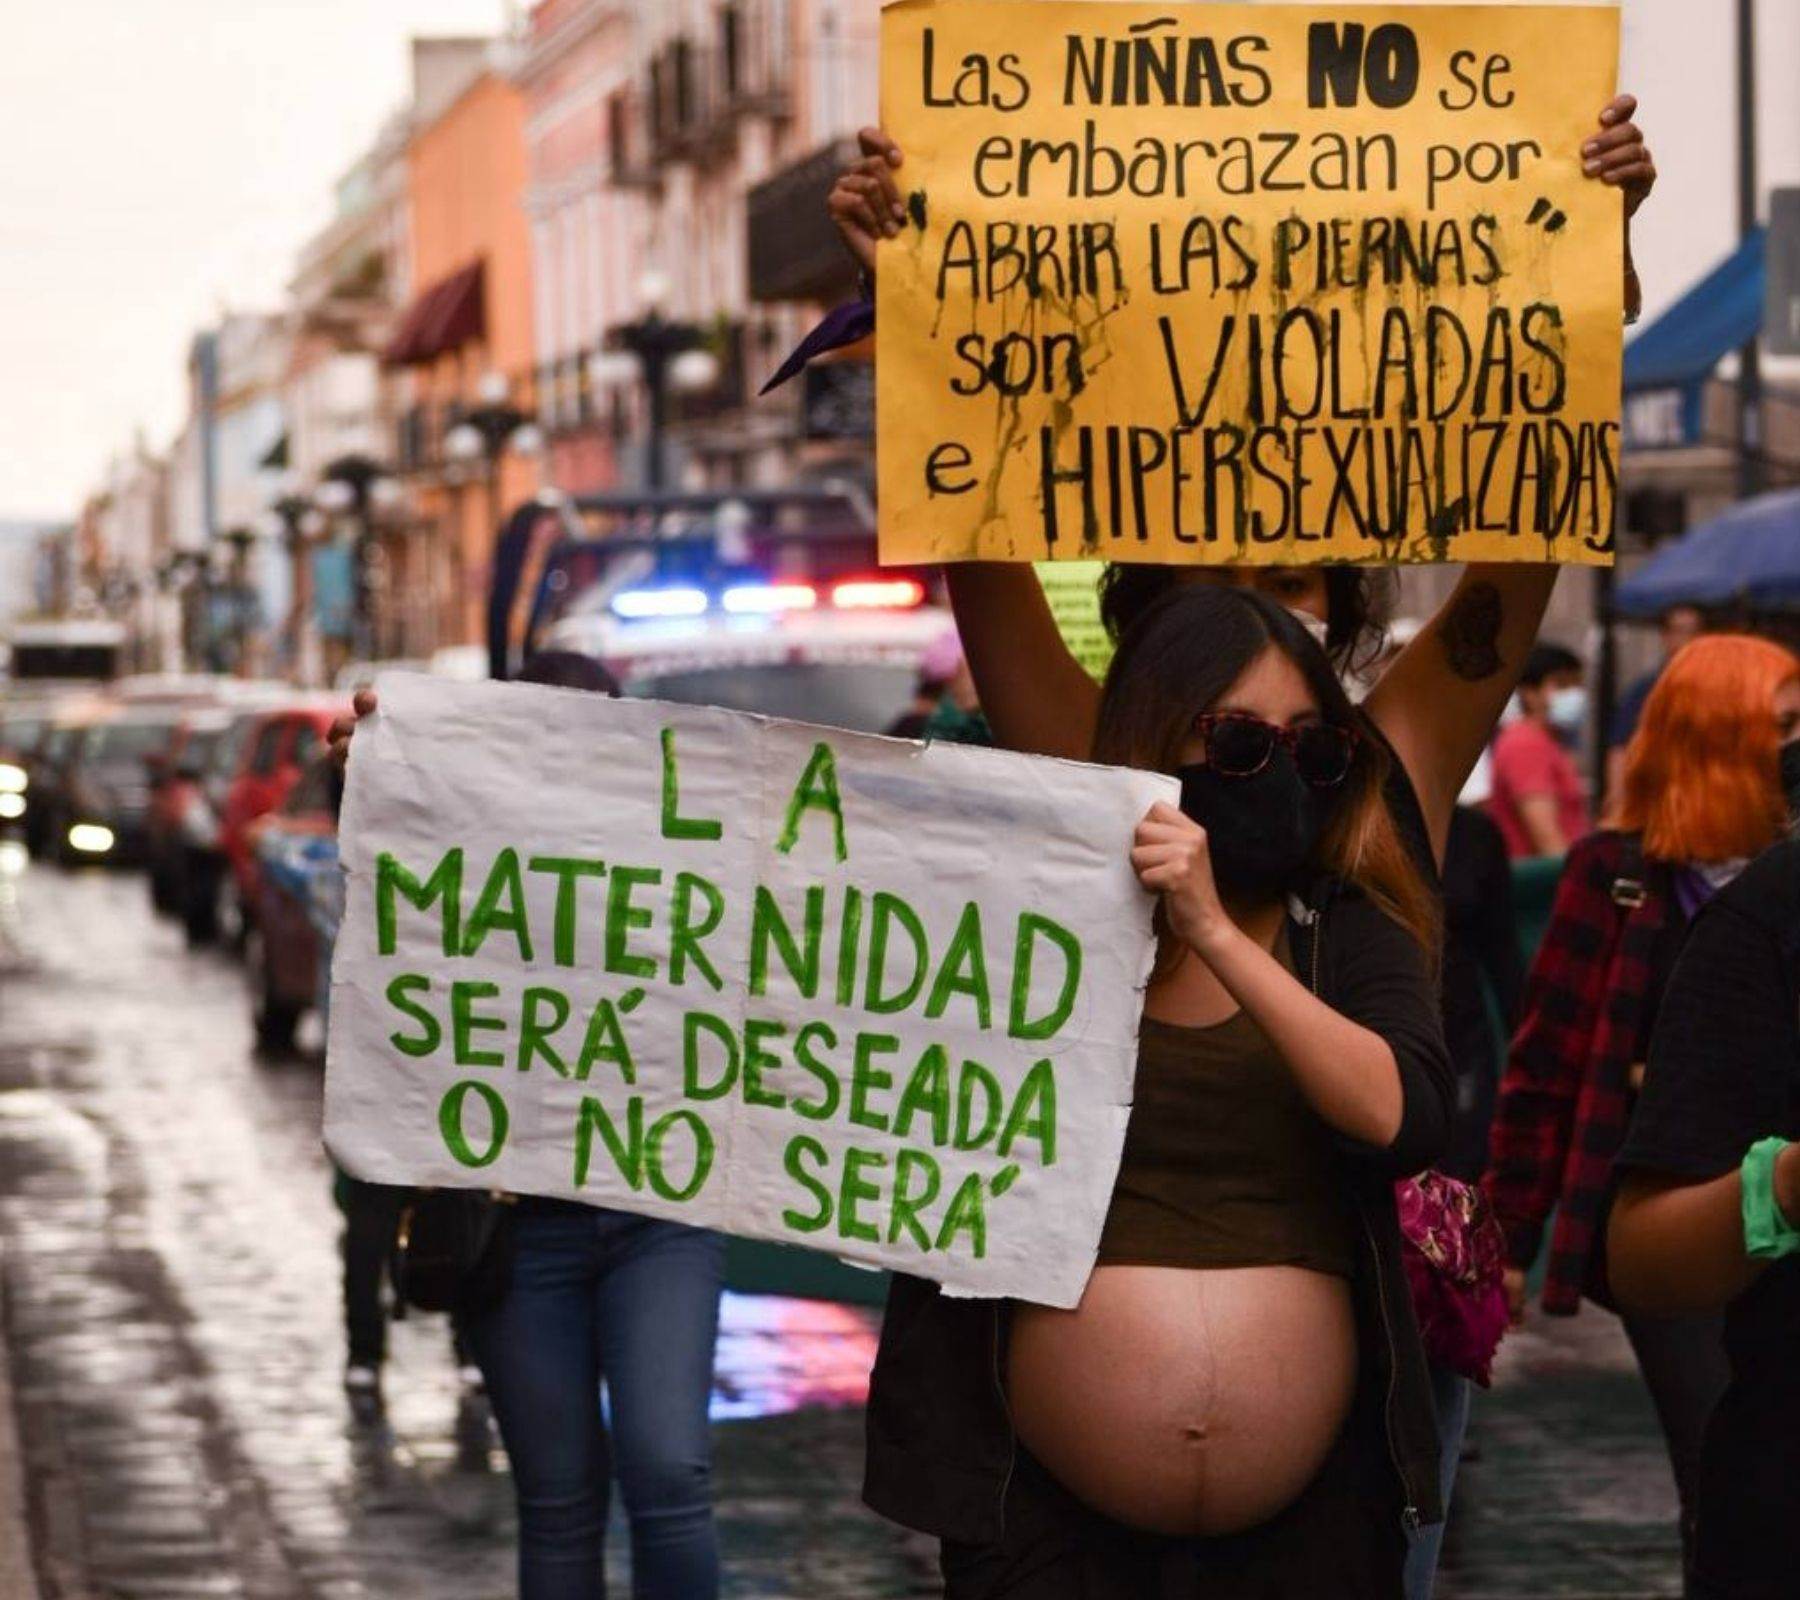 La despenalización del aborto en Puebla ha sido una de las principales demandas de los movimientos feministas en el estado. Fotografía: Daniel Chazari